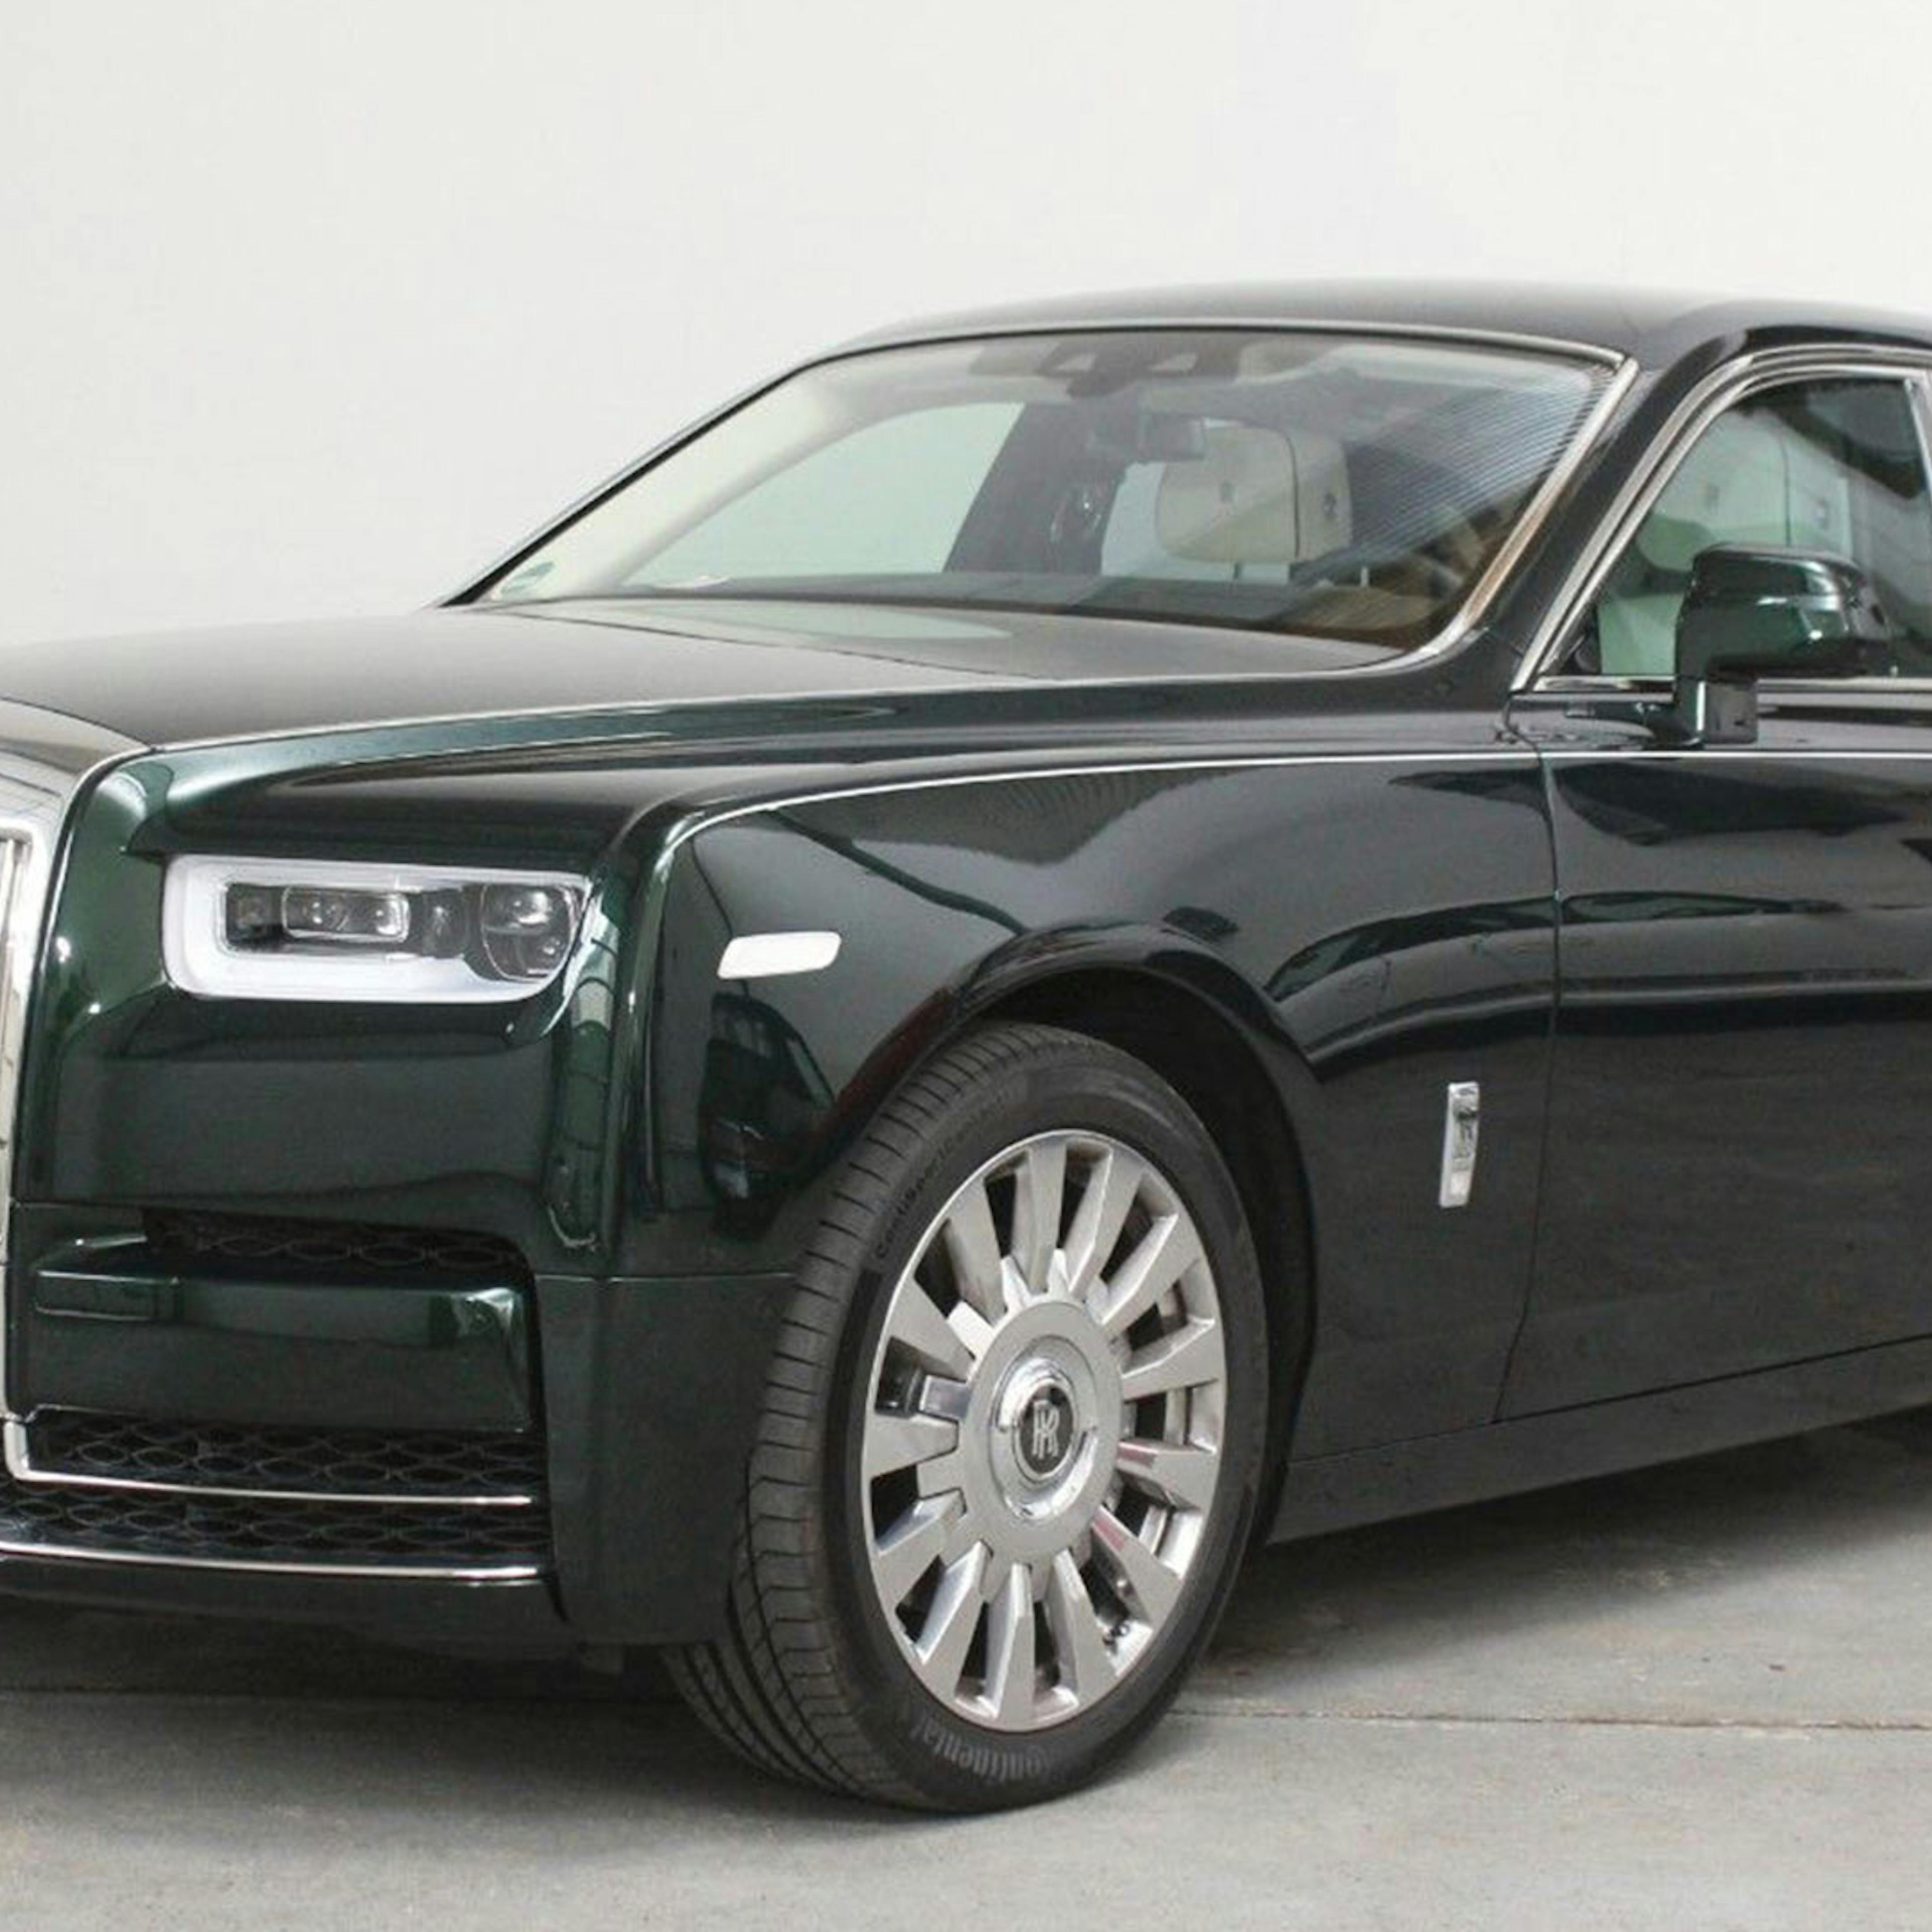 Ein schwarzer Rolls-Royce Phantom steht vor einer weißen Wand.